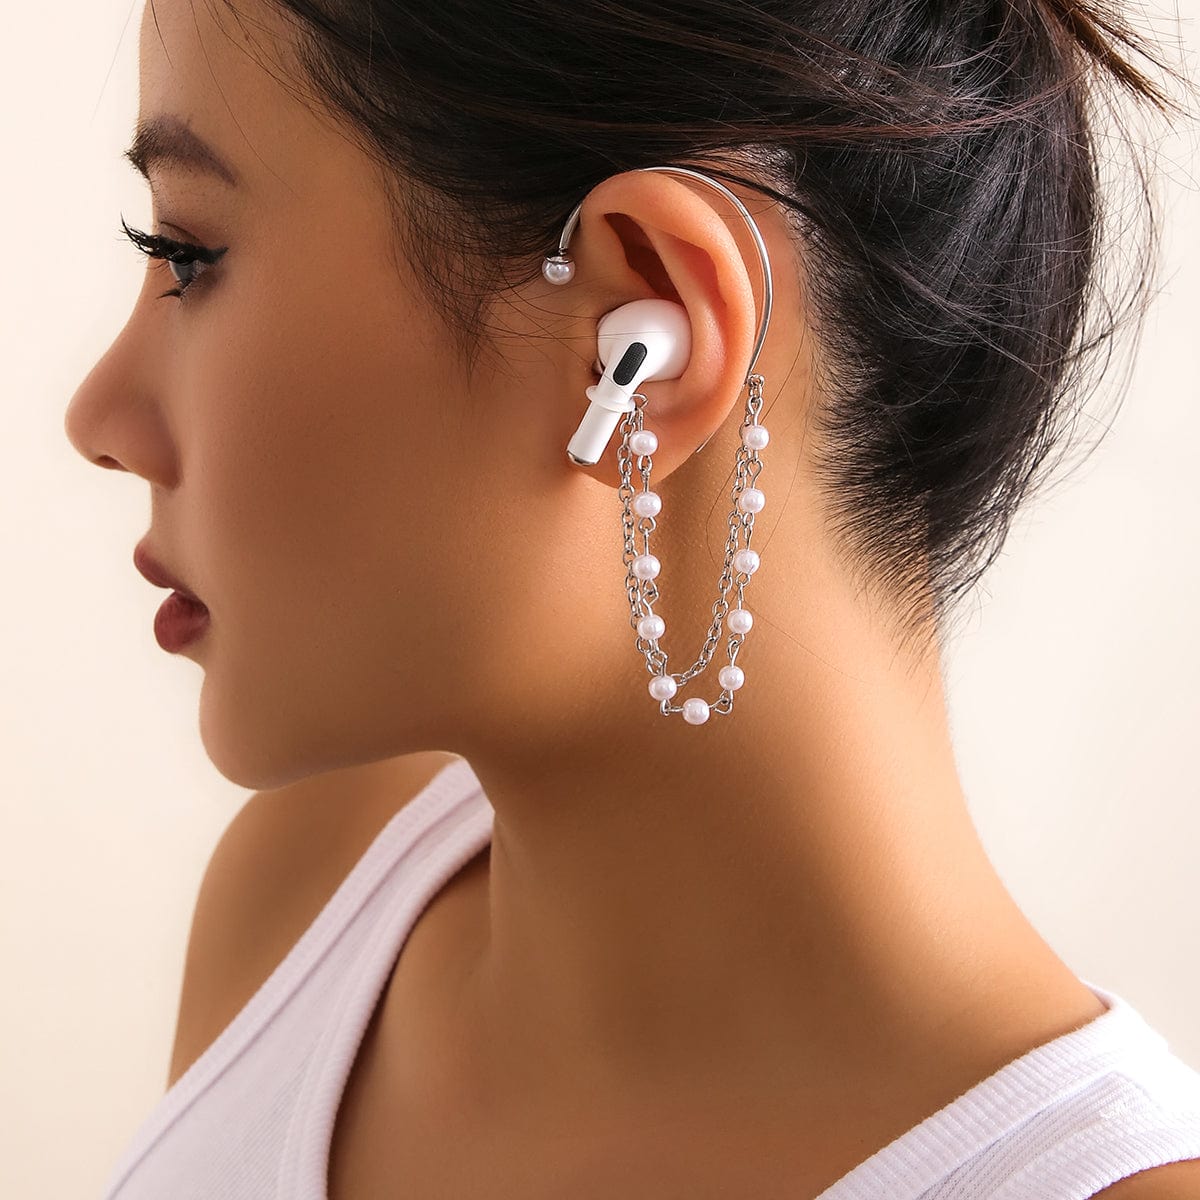 Anti-lost Wireless AirPods Earphone Pearl Chain Ear Wrap - ArtGalleryZen